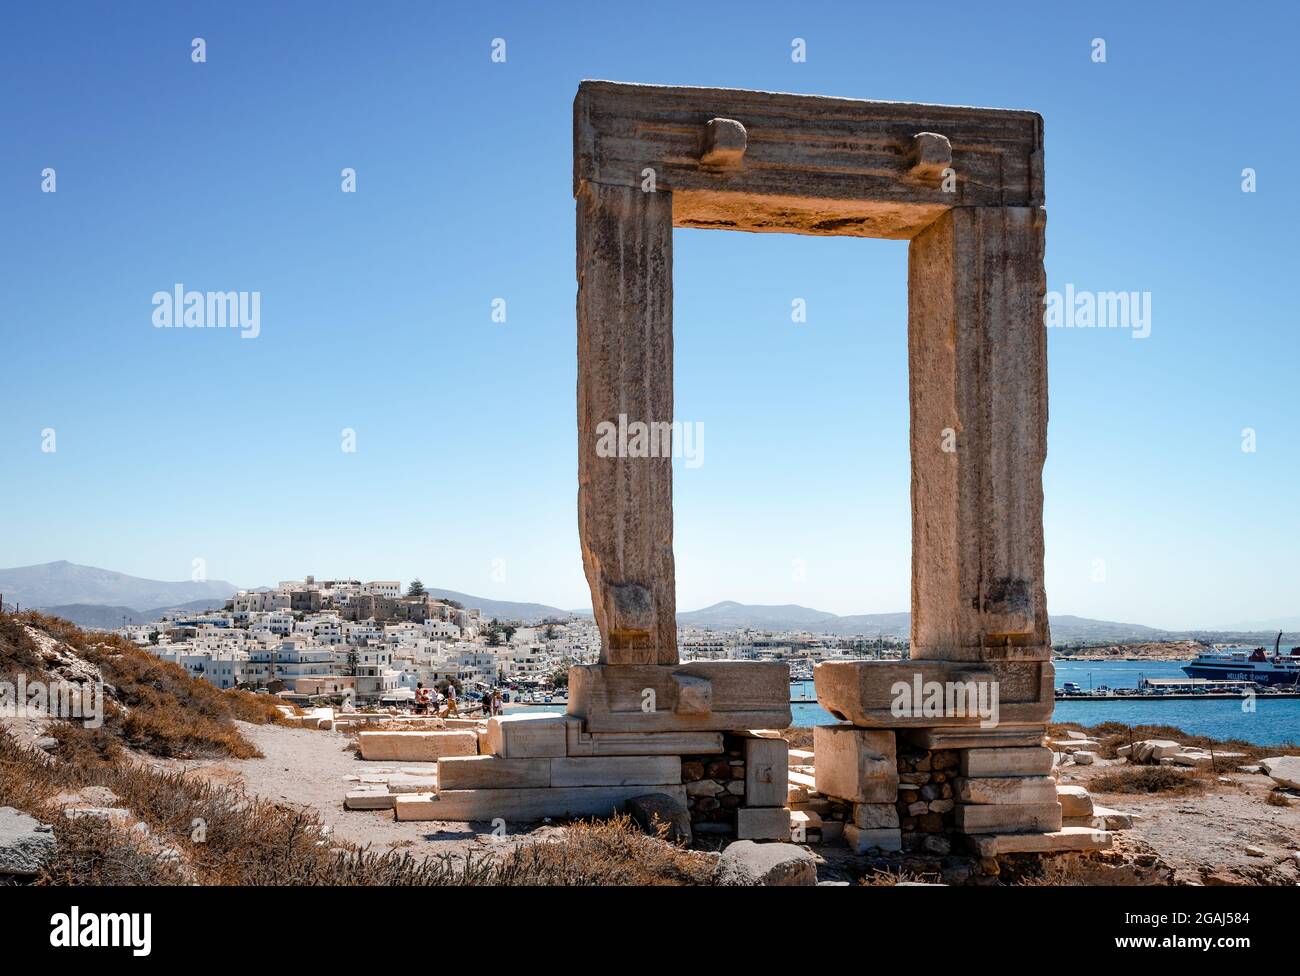 Portara (la porte de l'ancien temple d'Apollon) et Chora (la vieille ville) dans le brouet. Naxos est une île grecque située dans la mer Égée. Banque D'Images